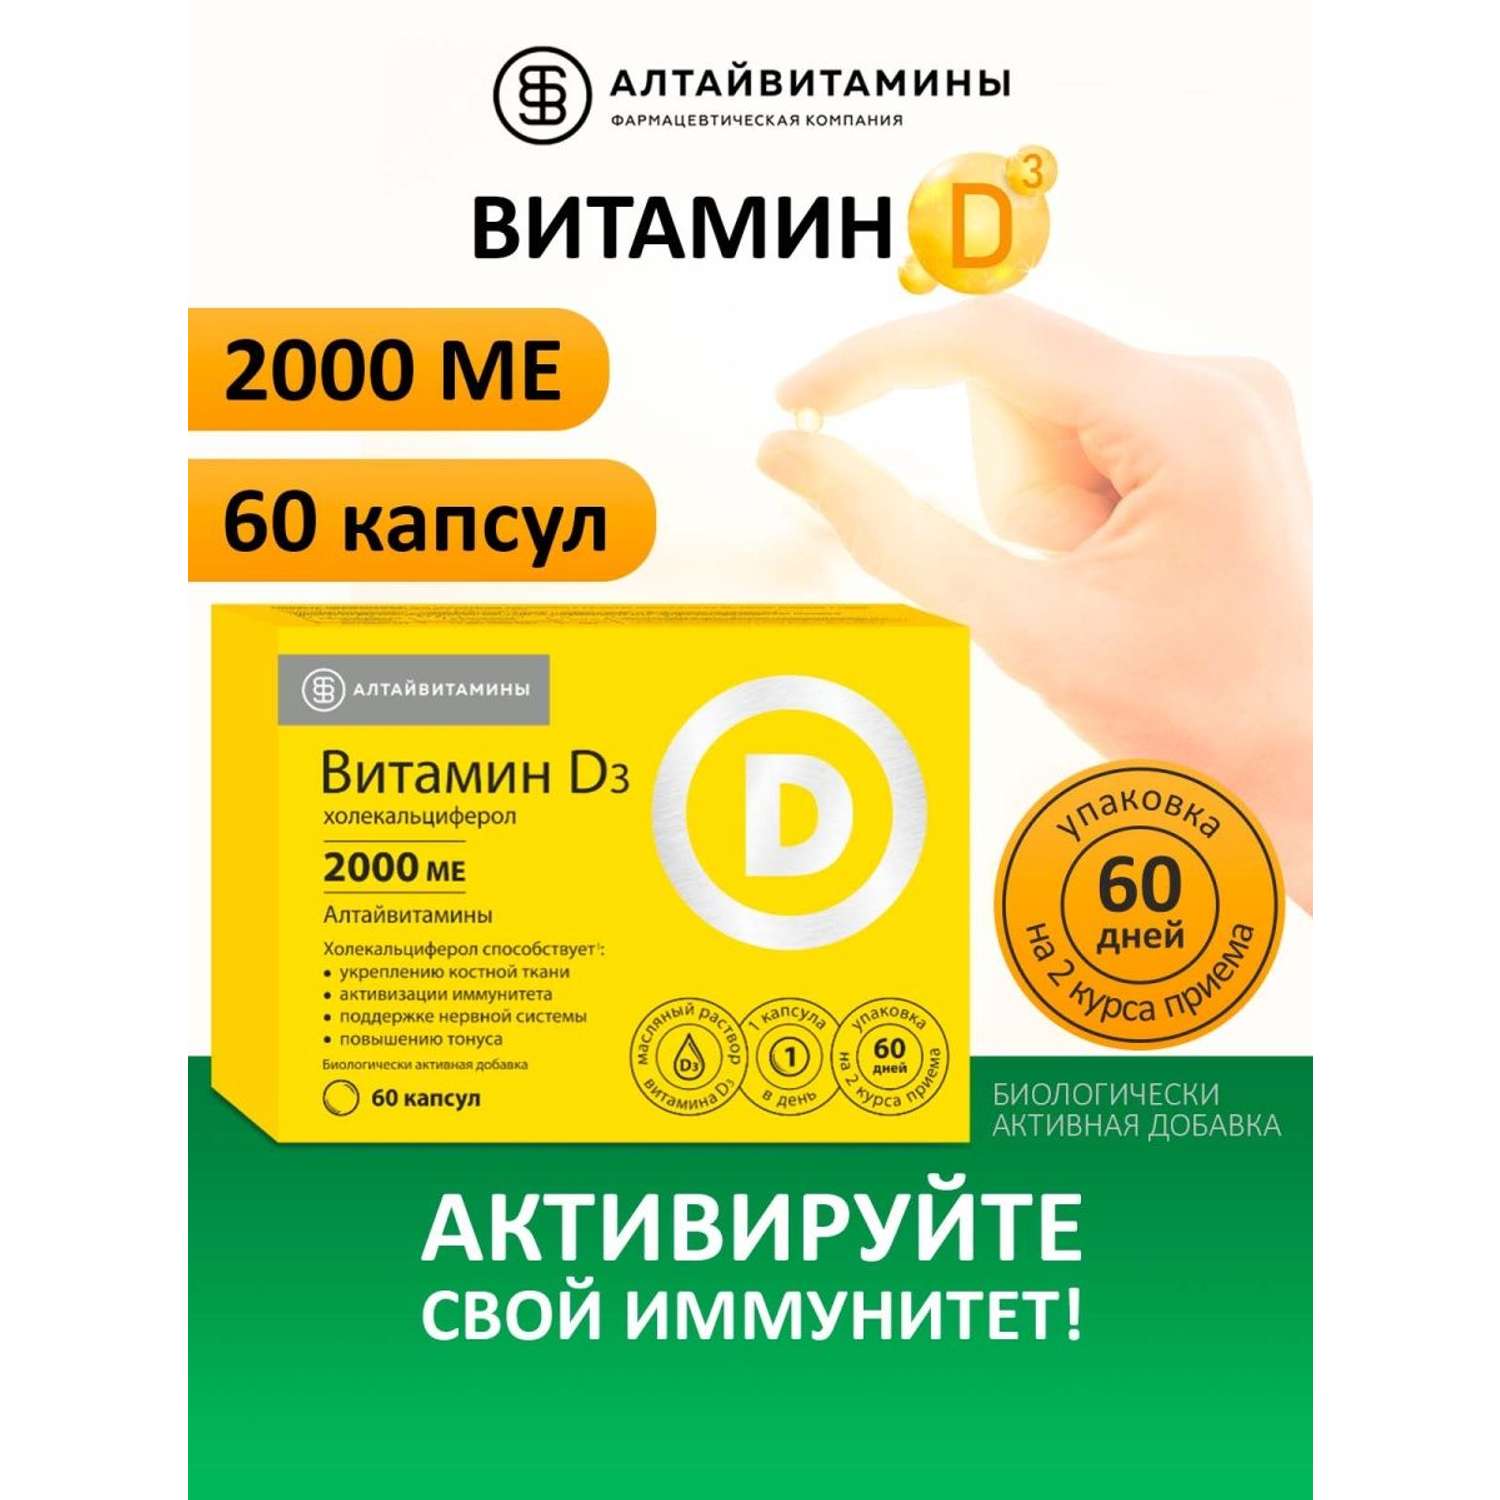 Витамин Д3 2000 МЕ Алтайвитамины 60 капсул - фото 2